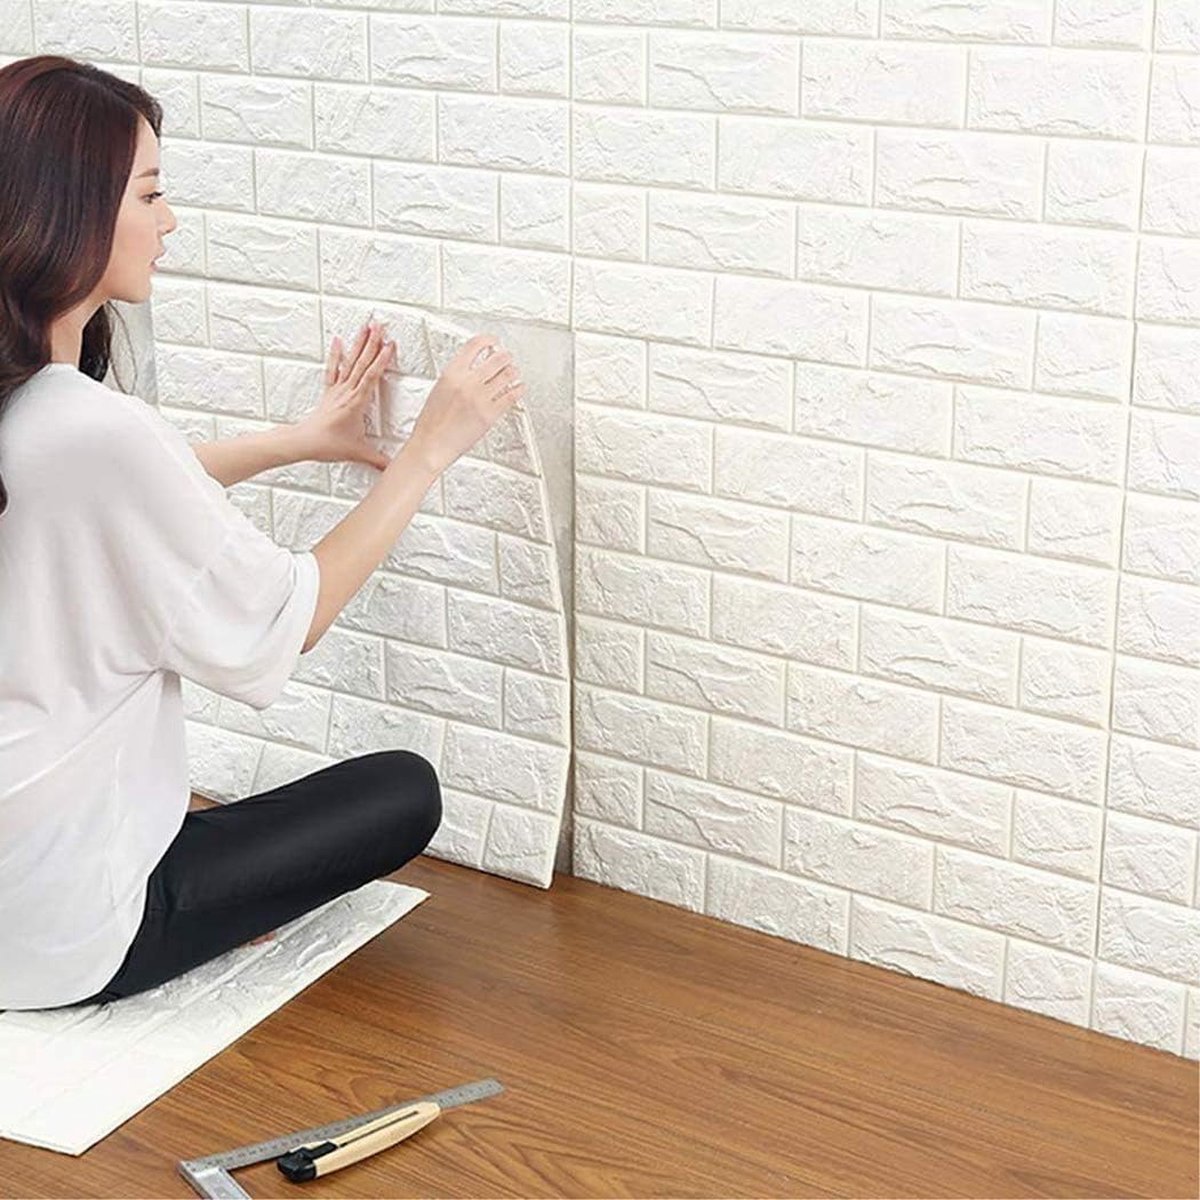 3D baksteenbehang, 3D behang wandpanelen, doe-het-zelf waterdichte zelfklevende muurstickers, 3D bakstenen steenlook decoratief behang voor binnenmuurbekleding decoratie (wit,10stuks) - Merkloos